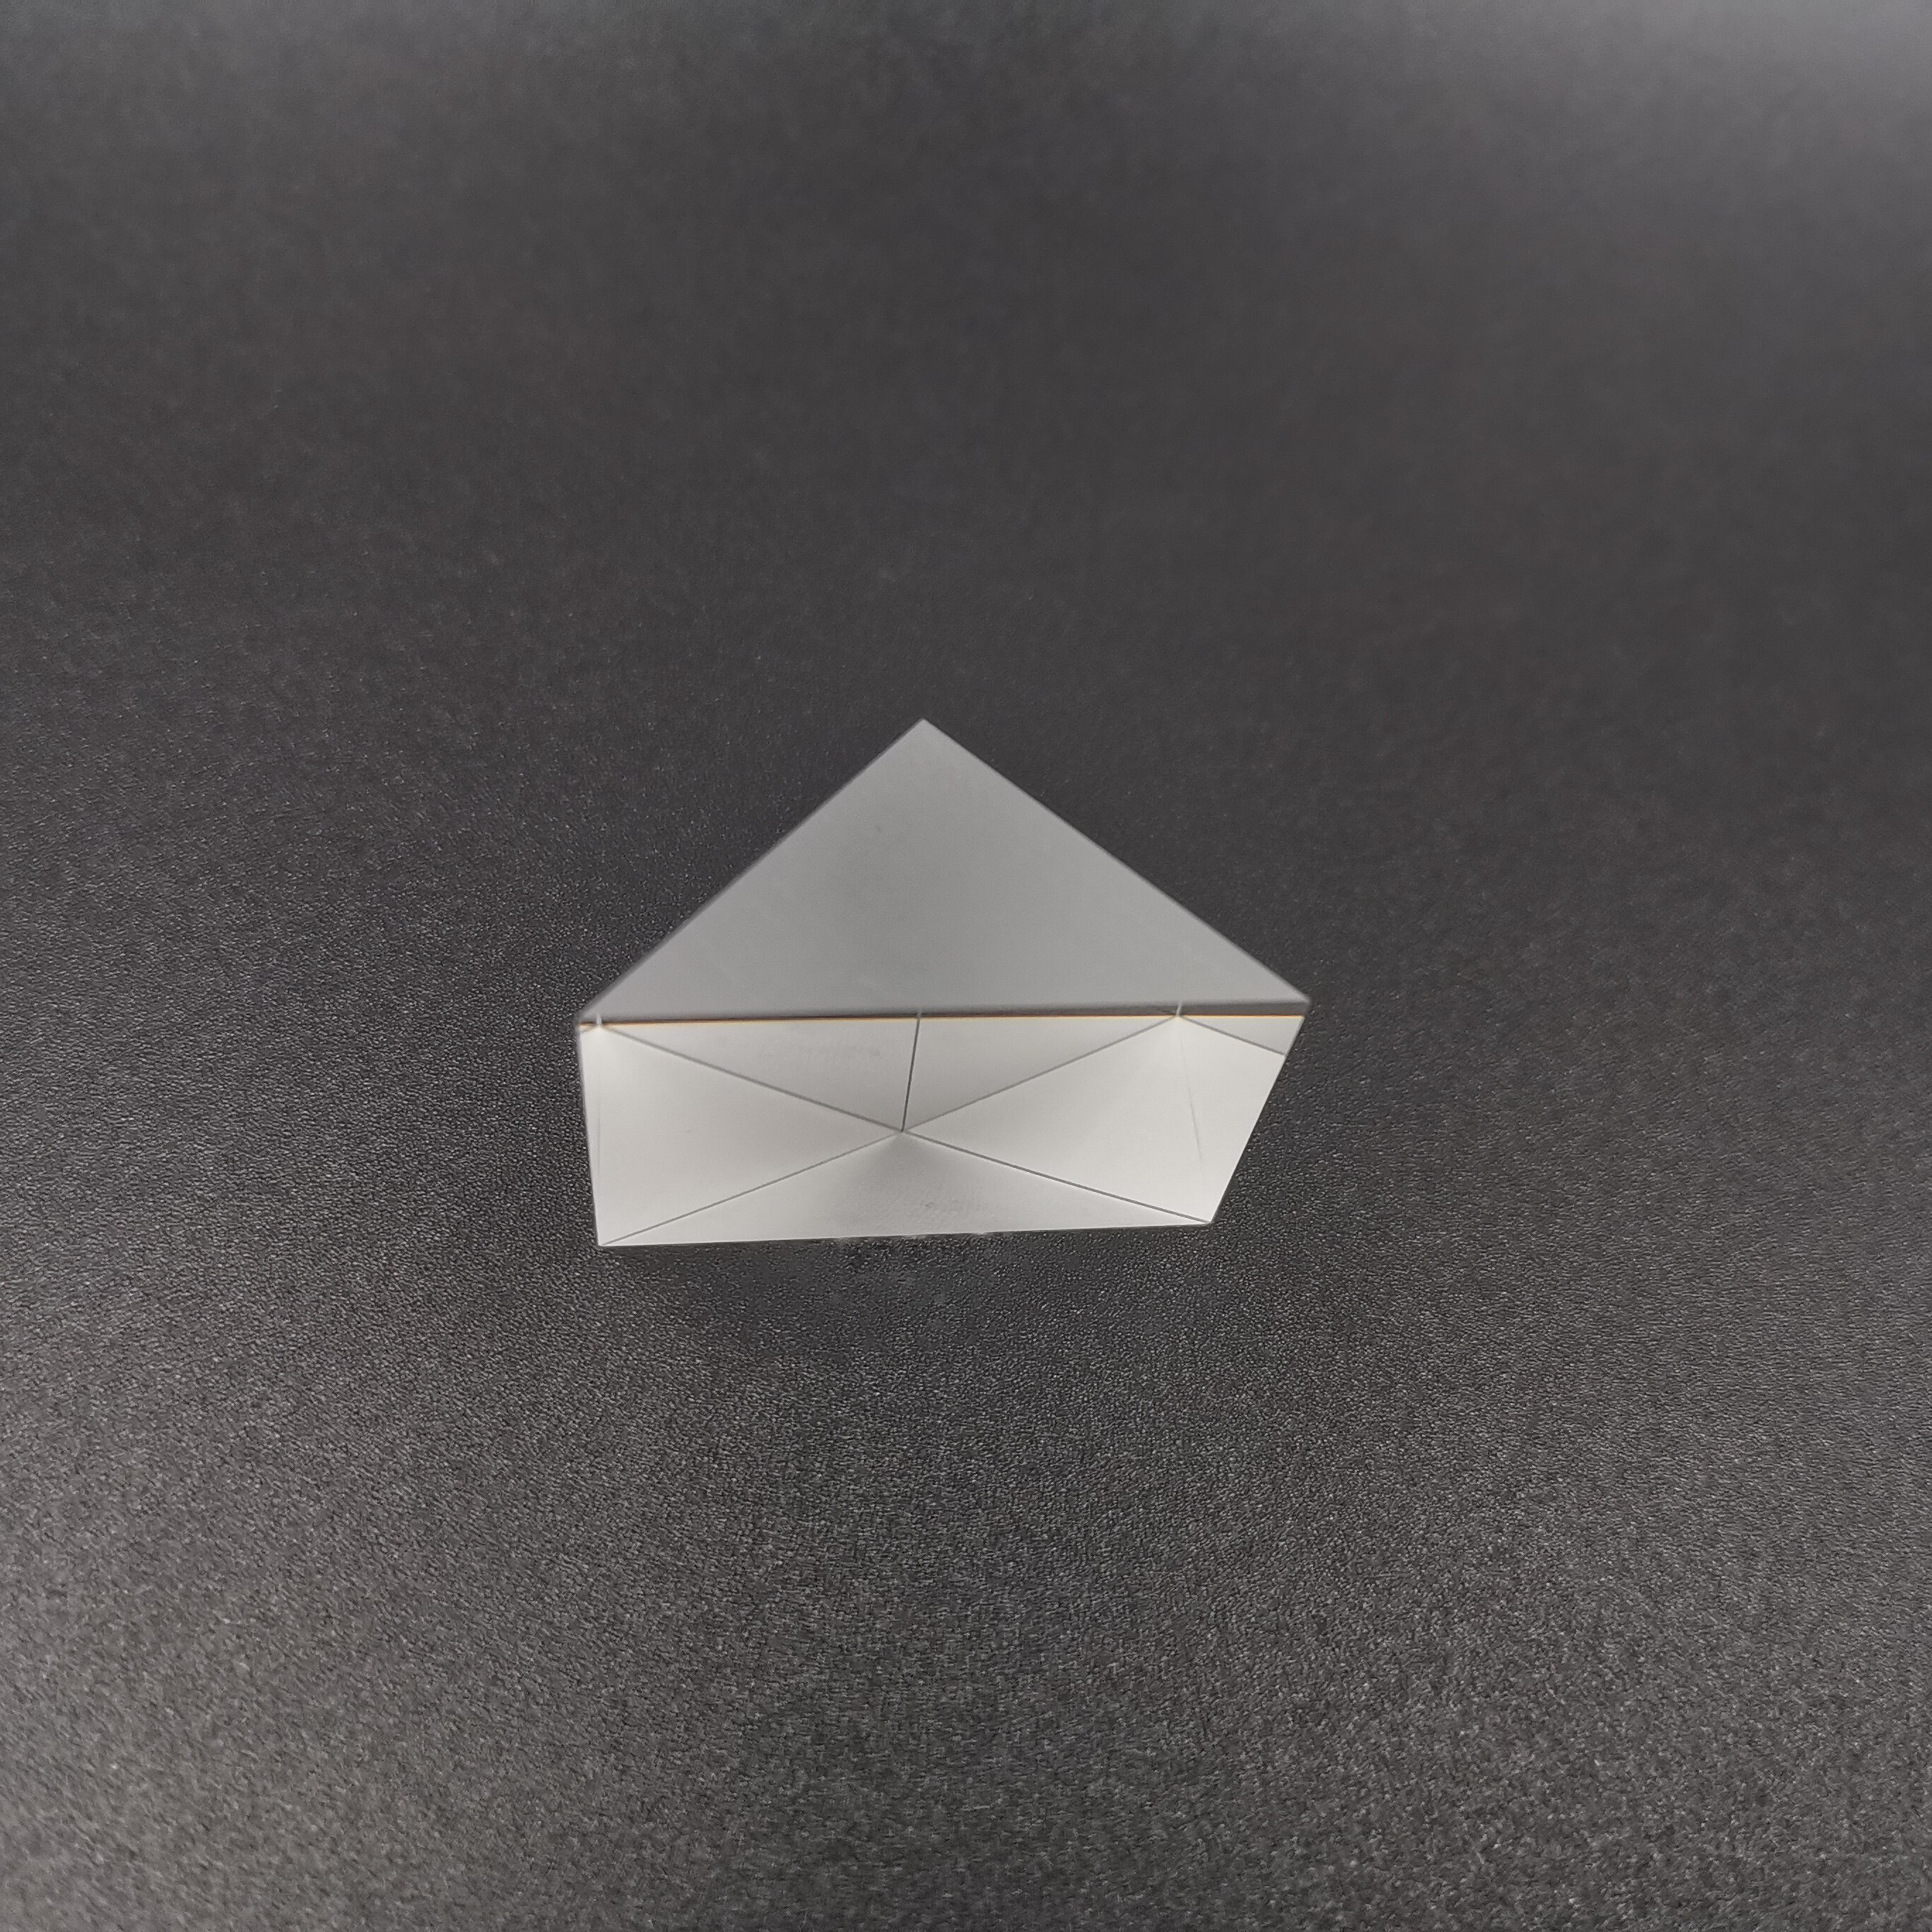 Retvinklet prisme 50*50*50mm ingen belægning n -bk7 (k9)  optiske komponenter glas til optiske præcisionsinstrumenter